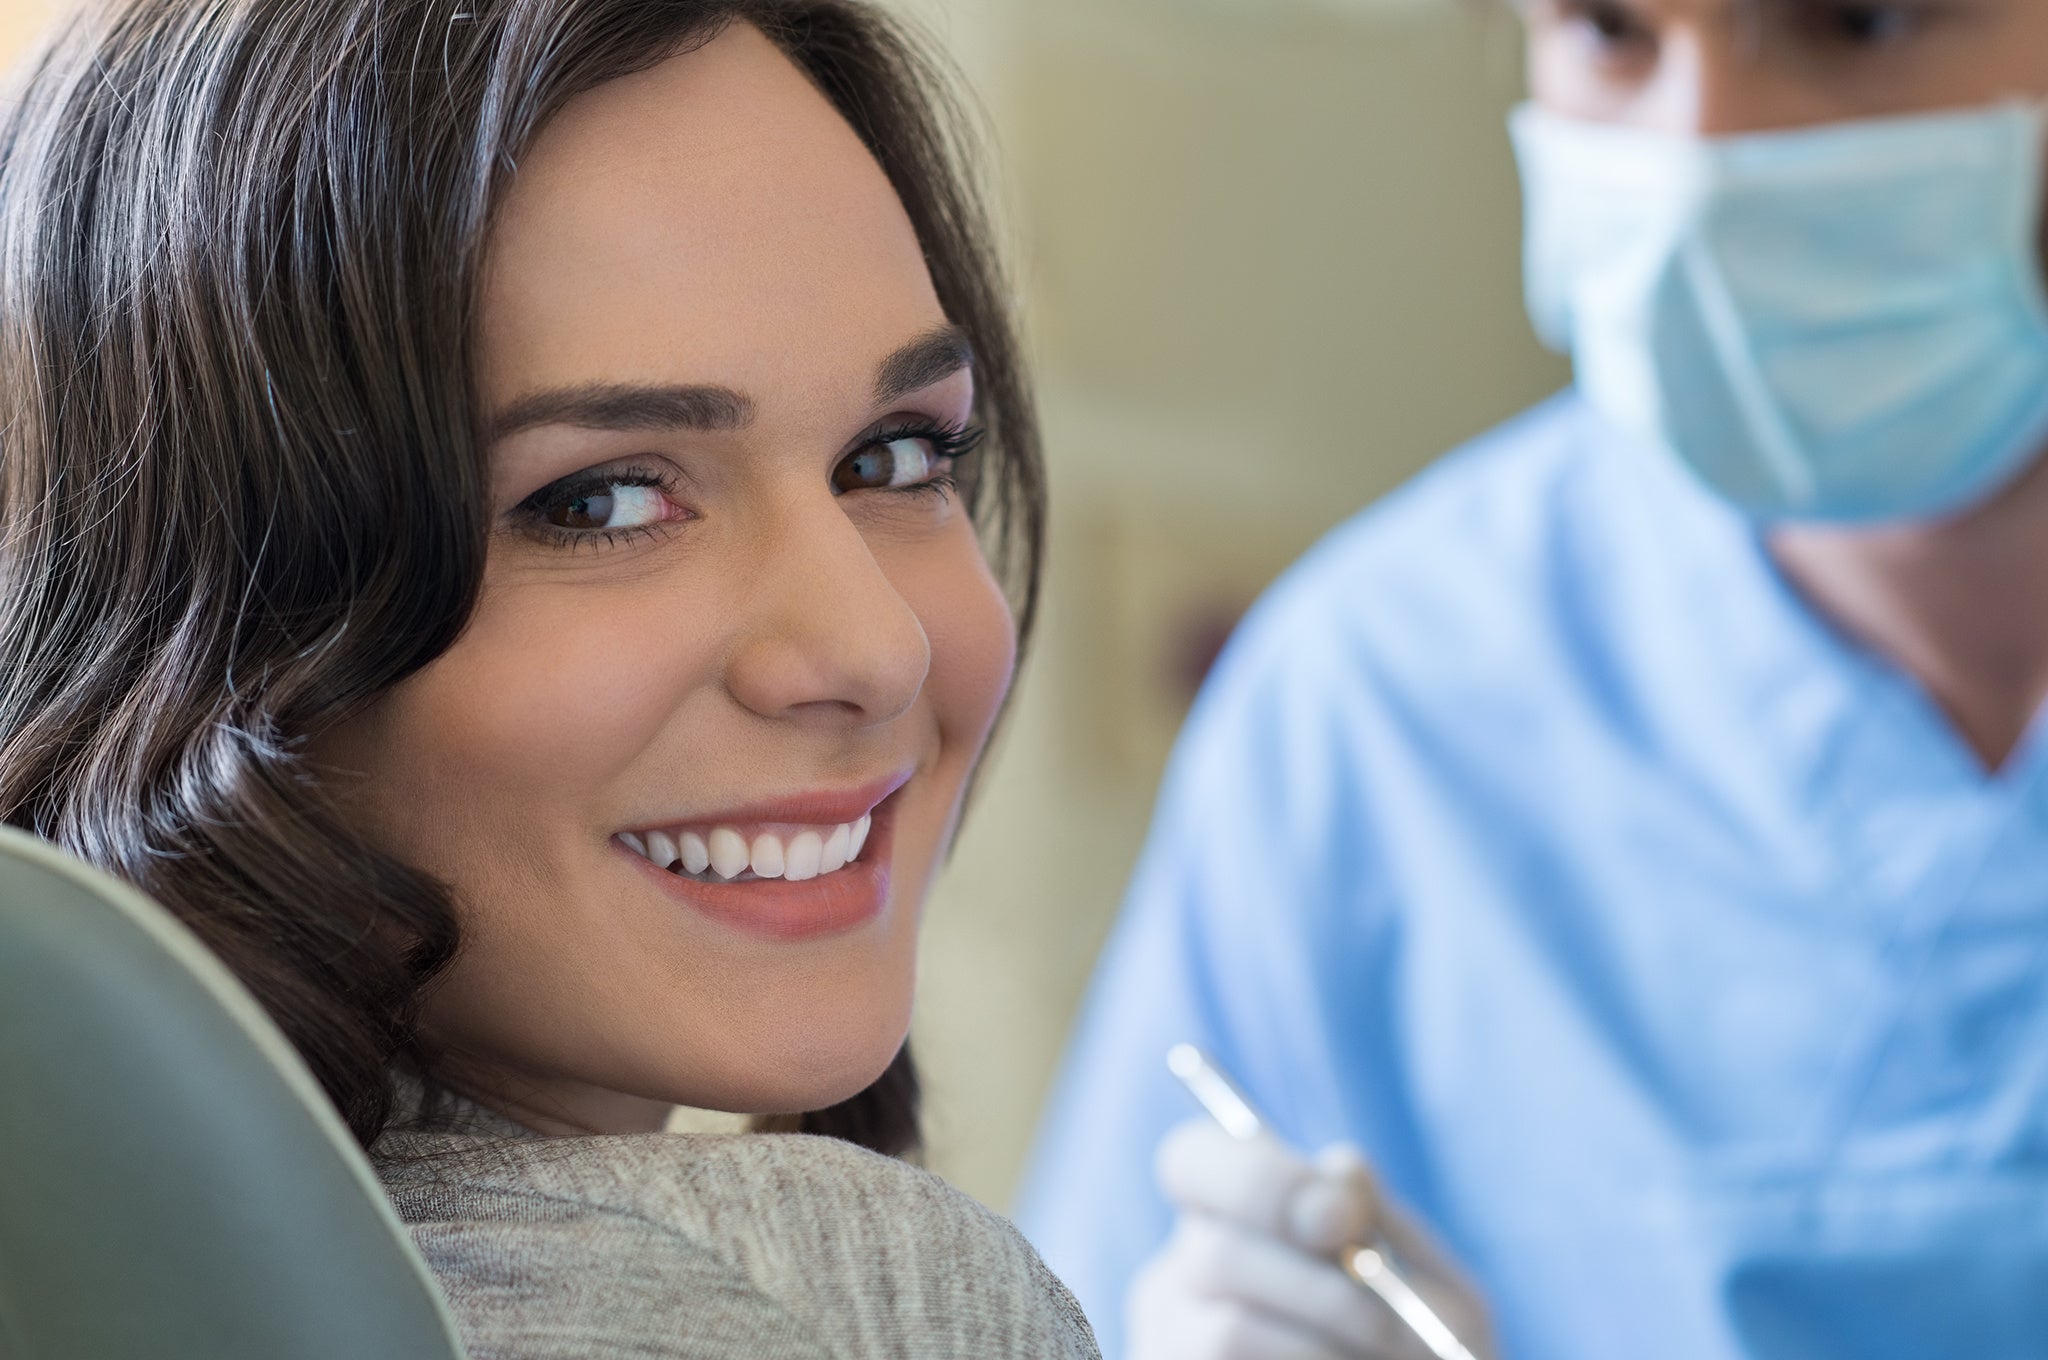 6 tip som kan hjælpe dig med at overvinde tandlægeskræk